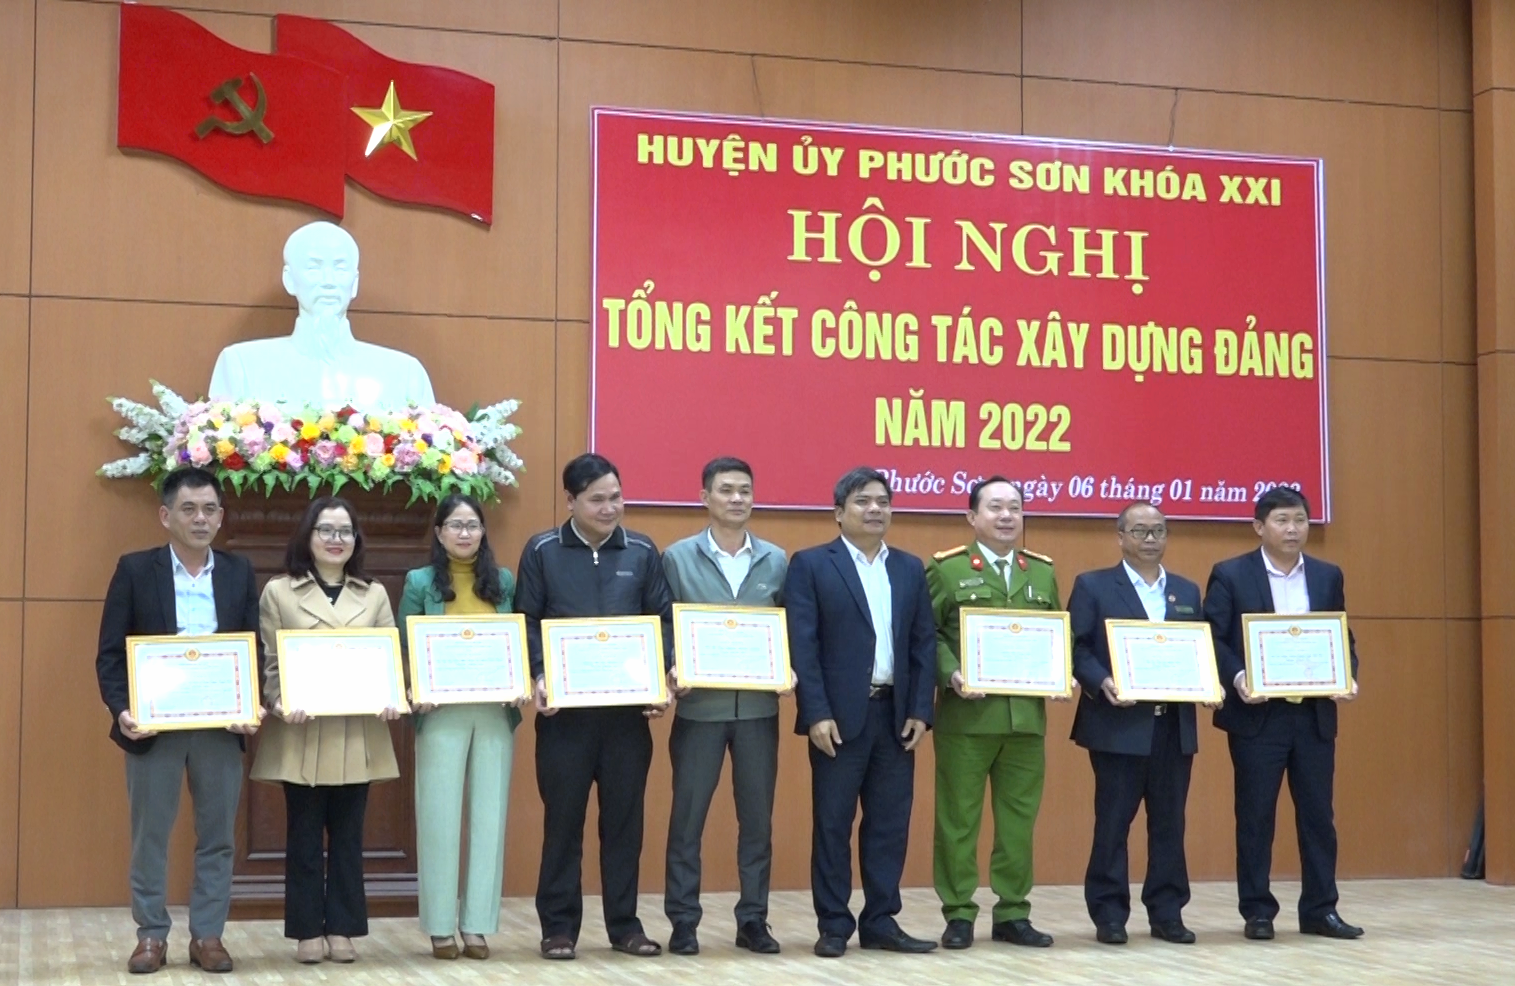 Huyện ủy và UBND huyện Phước Sơn khen thưởng 18 tập thể, 14 cá nhân có thành tích xuất sắc trong công tác xây dựng Đảng và thực hiện các phong trào thi đua năm 2022.